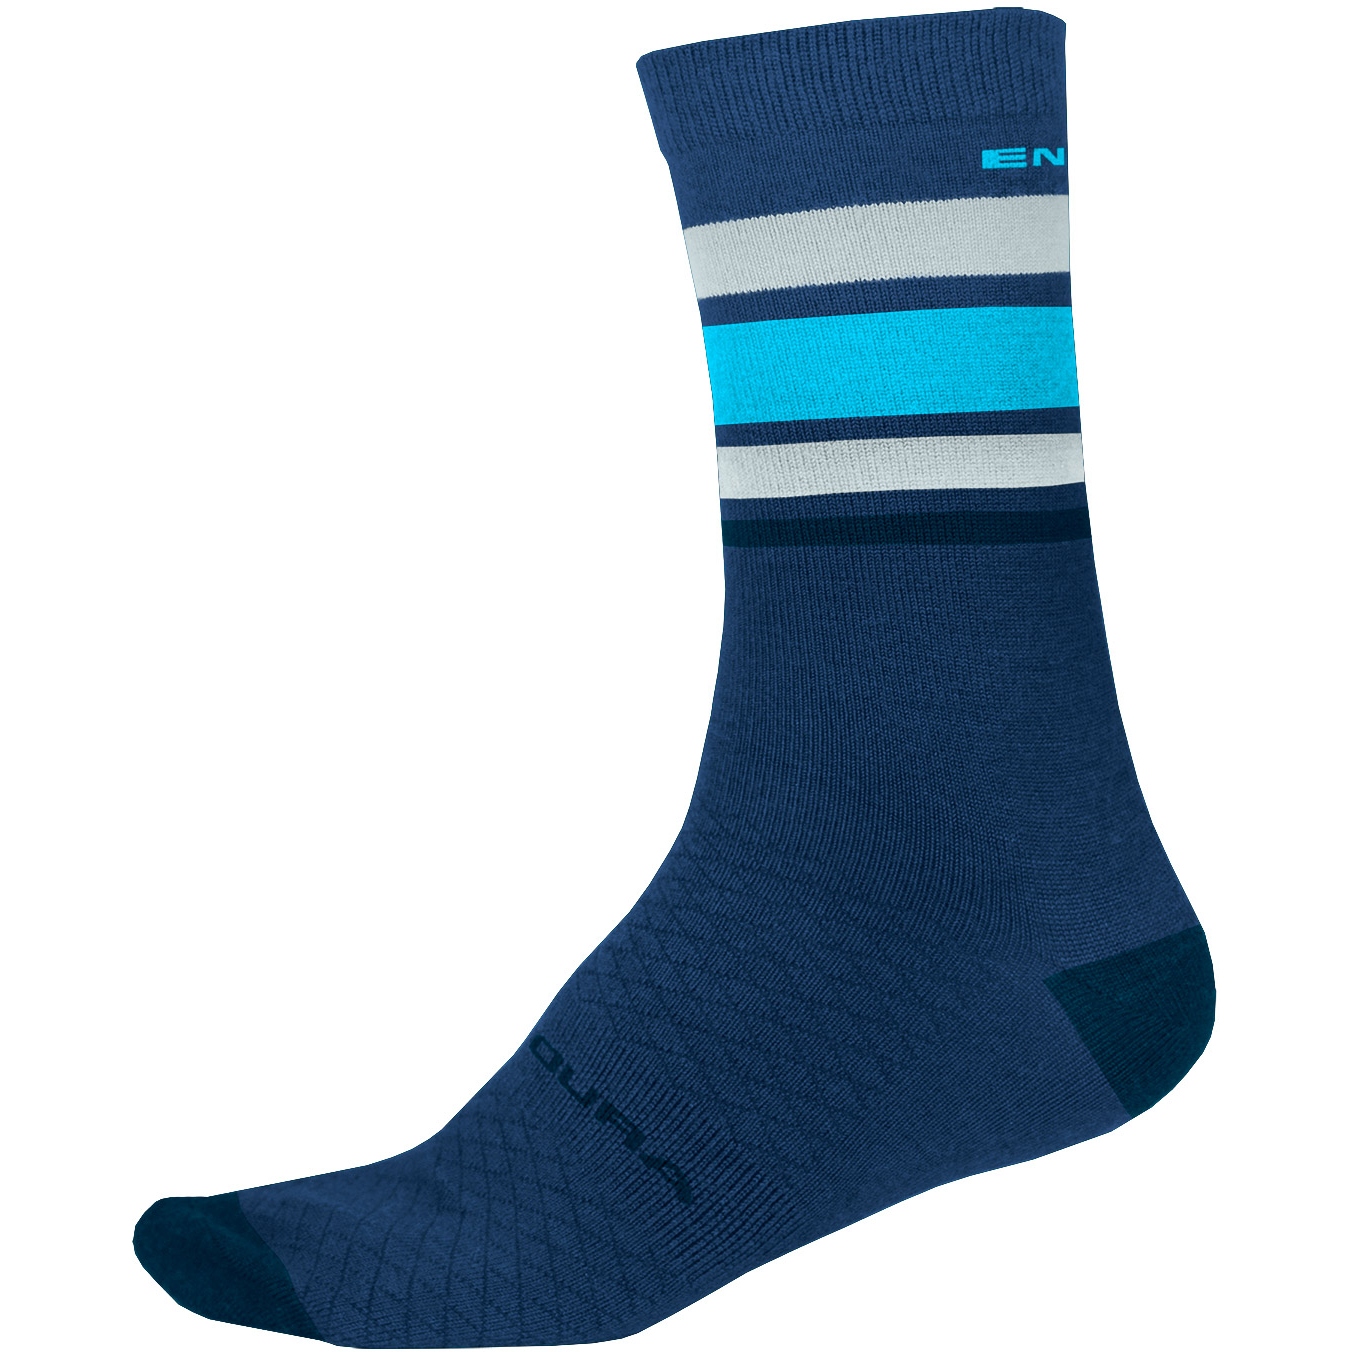 Produktbild von Endura BaaBaa Merino Stripe Socken mittellang - blaubeere